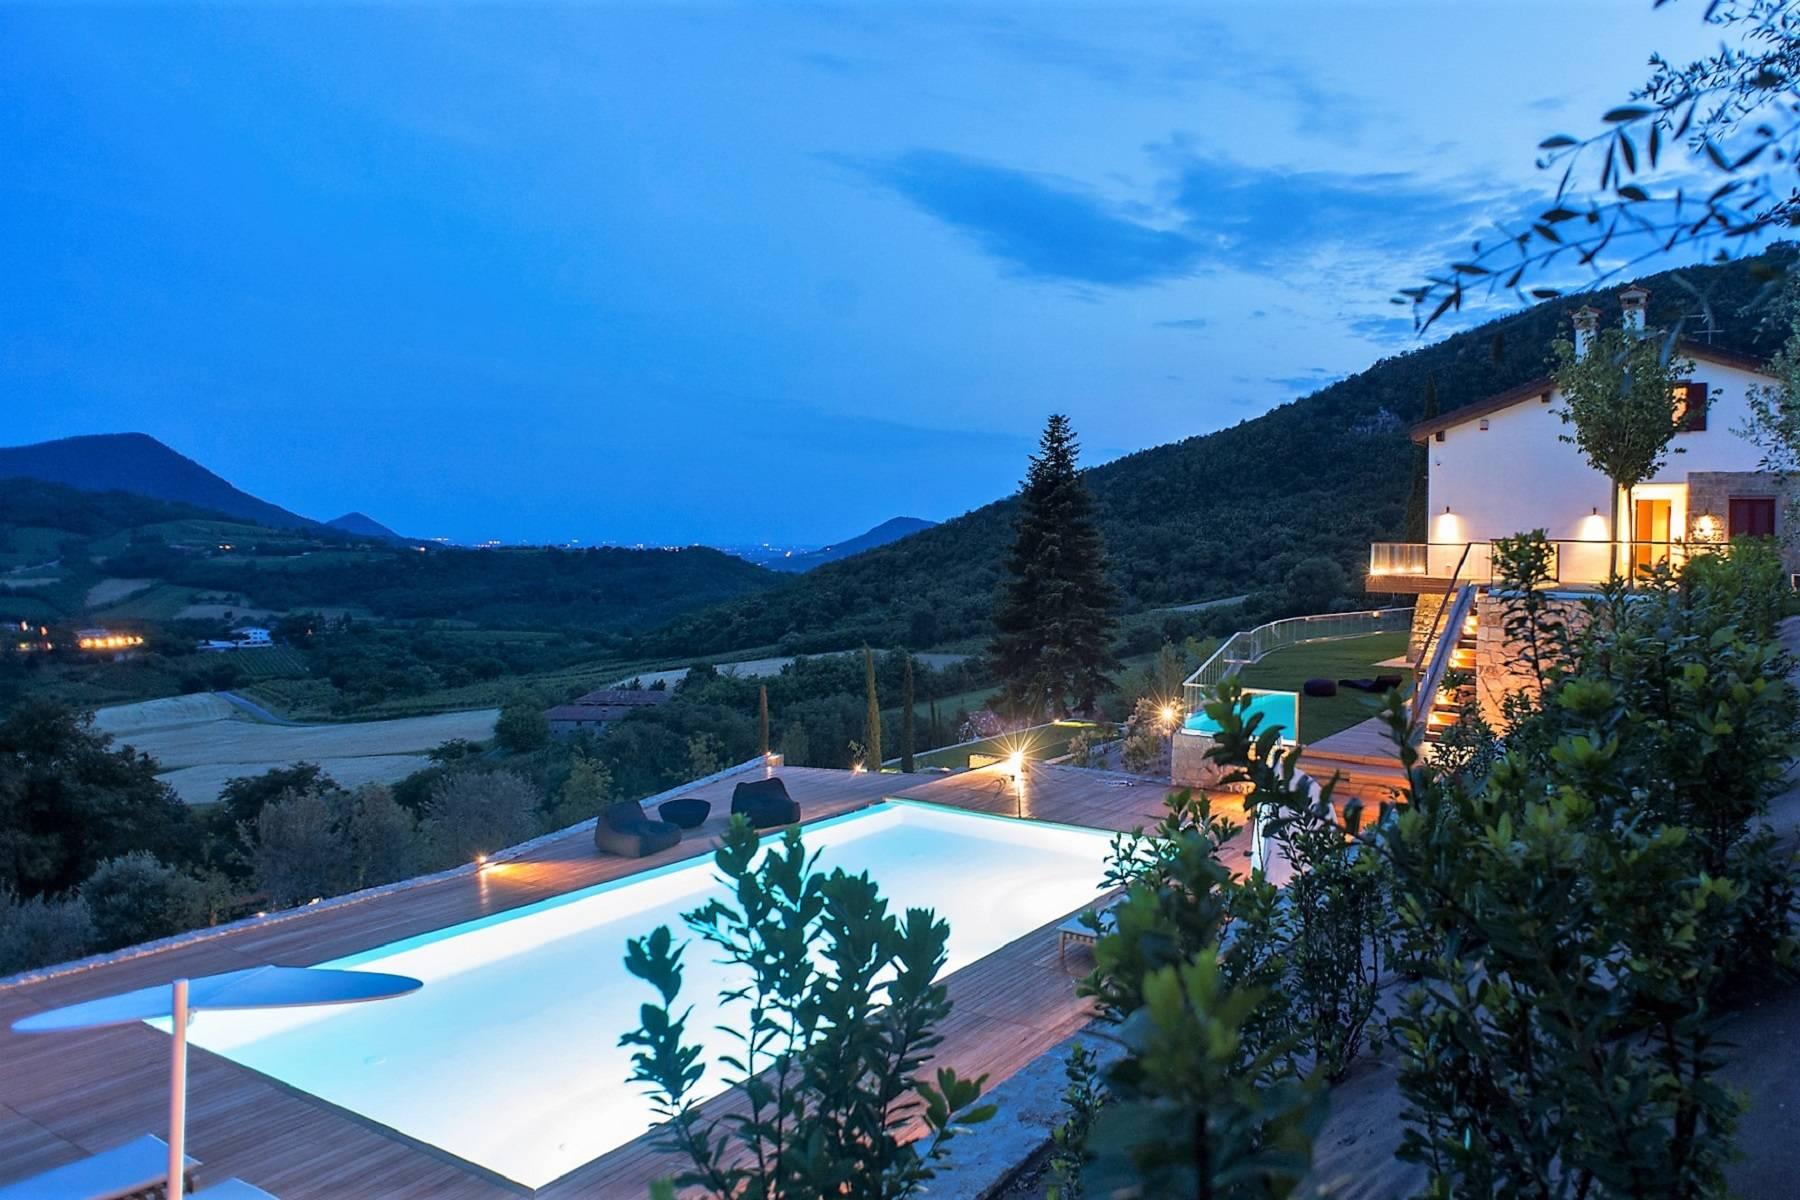 Villa moderna in collina con piscina, eliporto, maneggio e lodge - 1